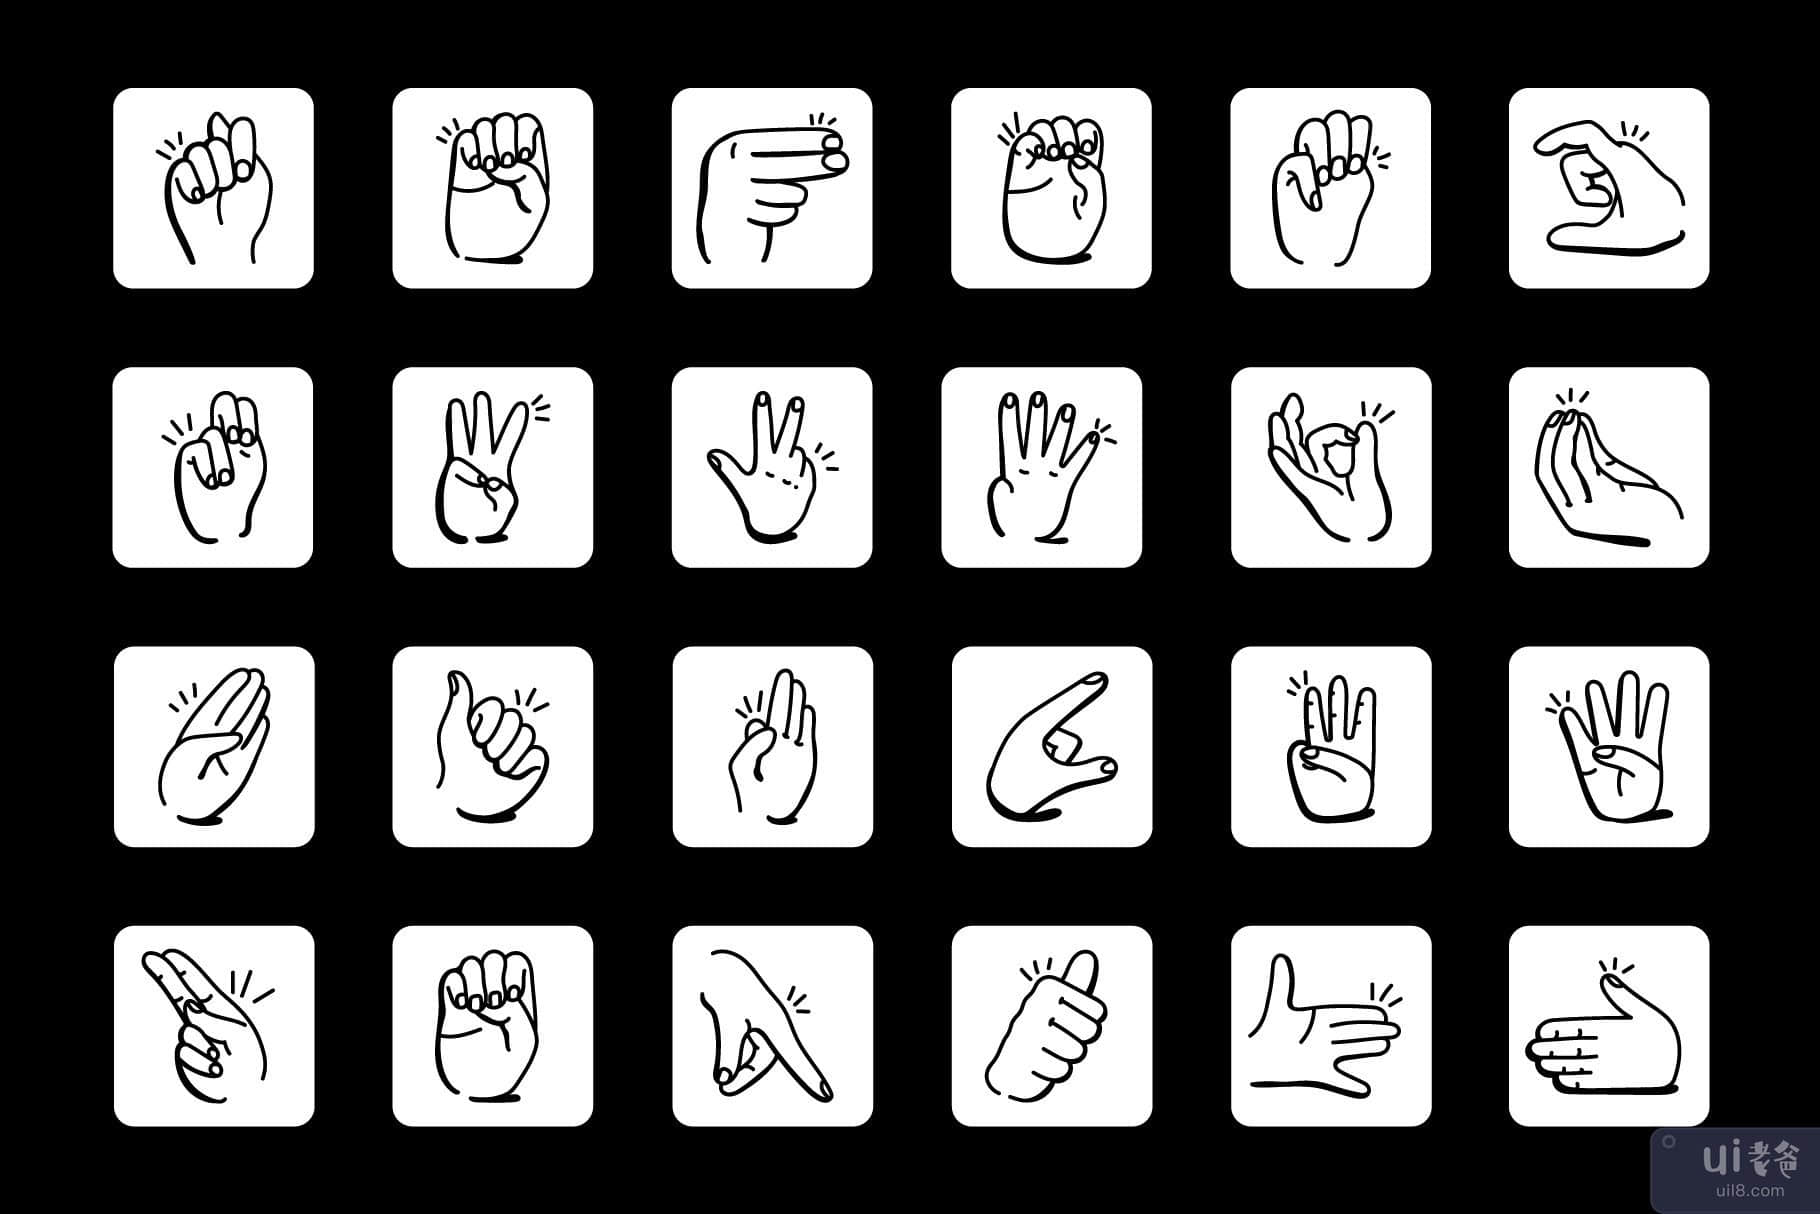 涂鸦手语图标的集合(Collection of Doodle Sign Language Icons)插图3